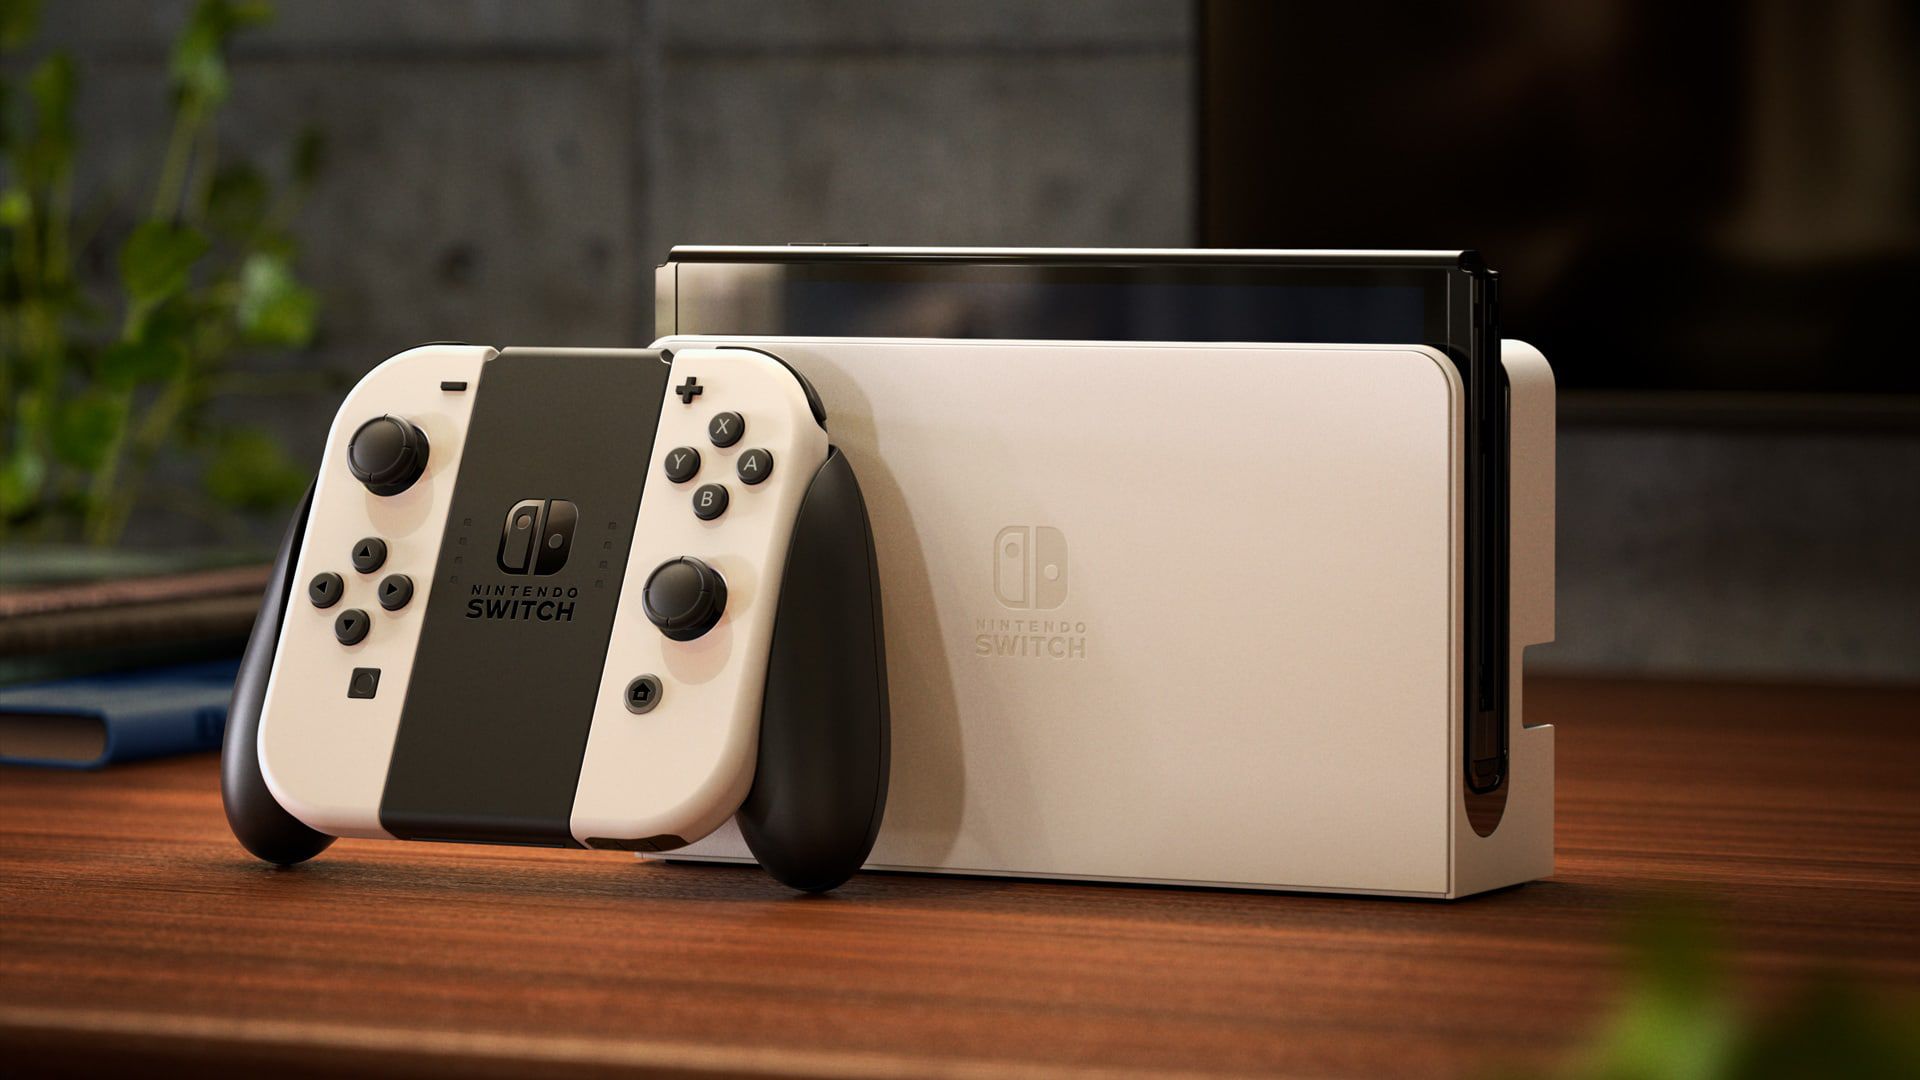 Consola Nintendo Switch: Lite, Oled e Edições Limitadas